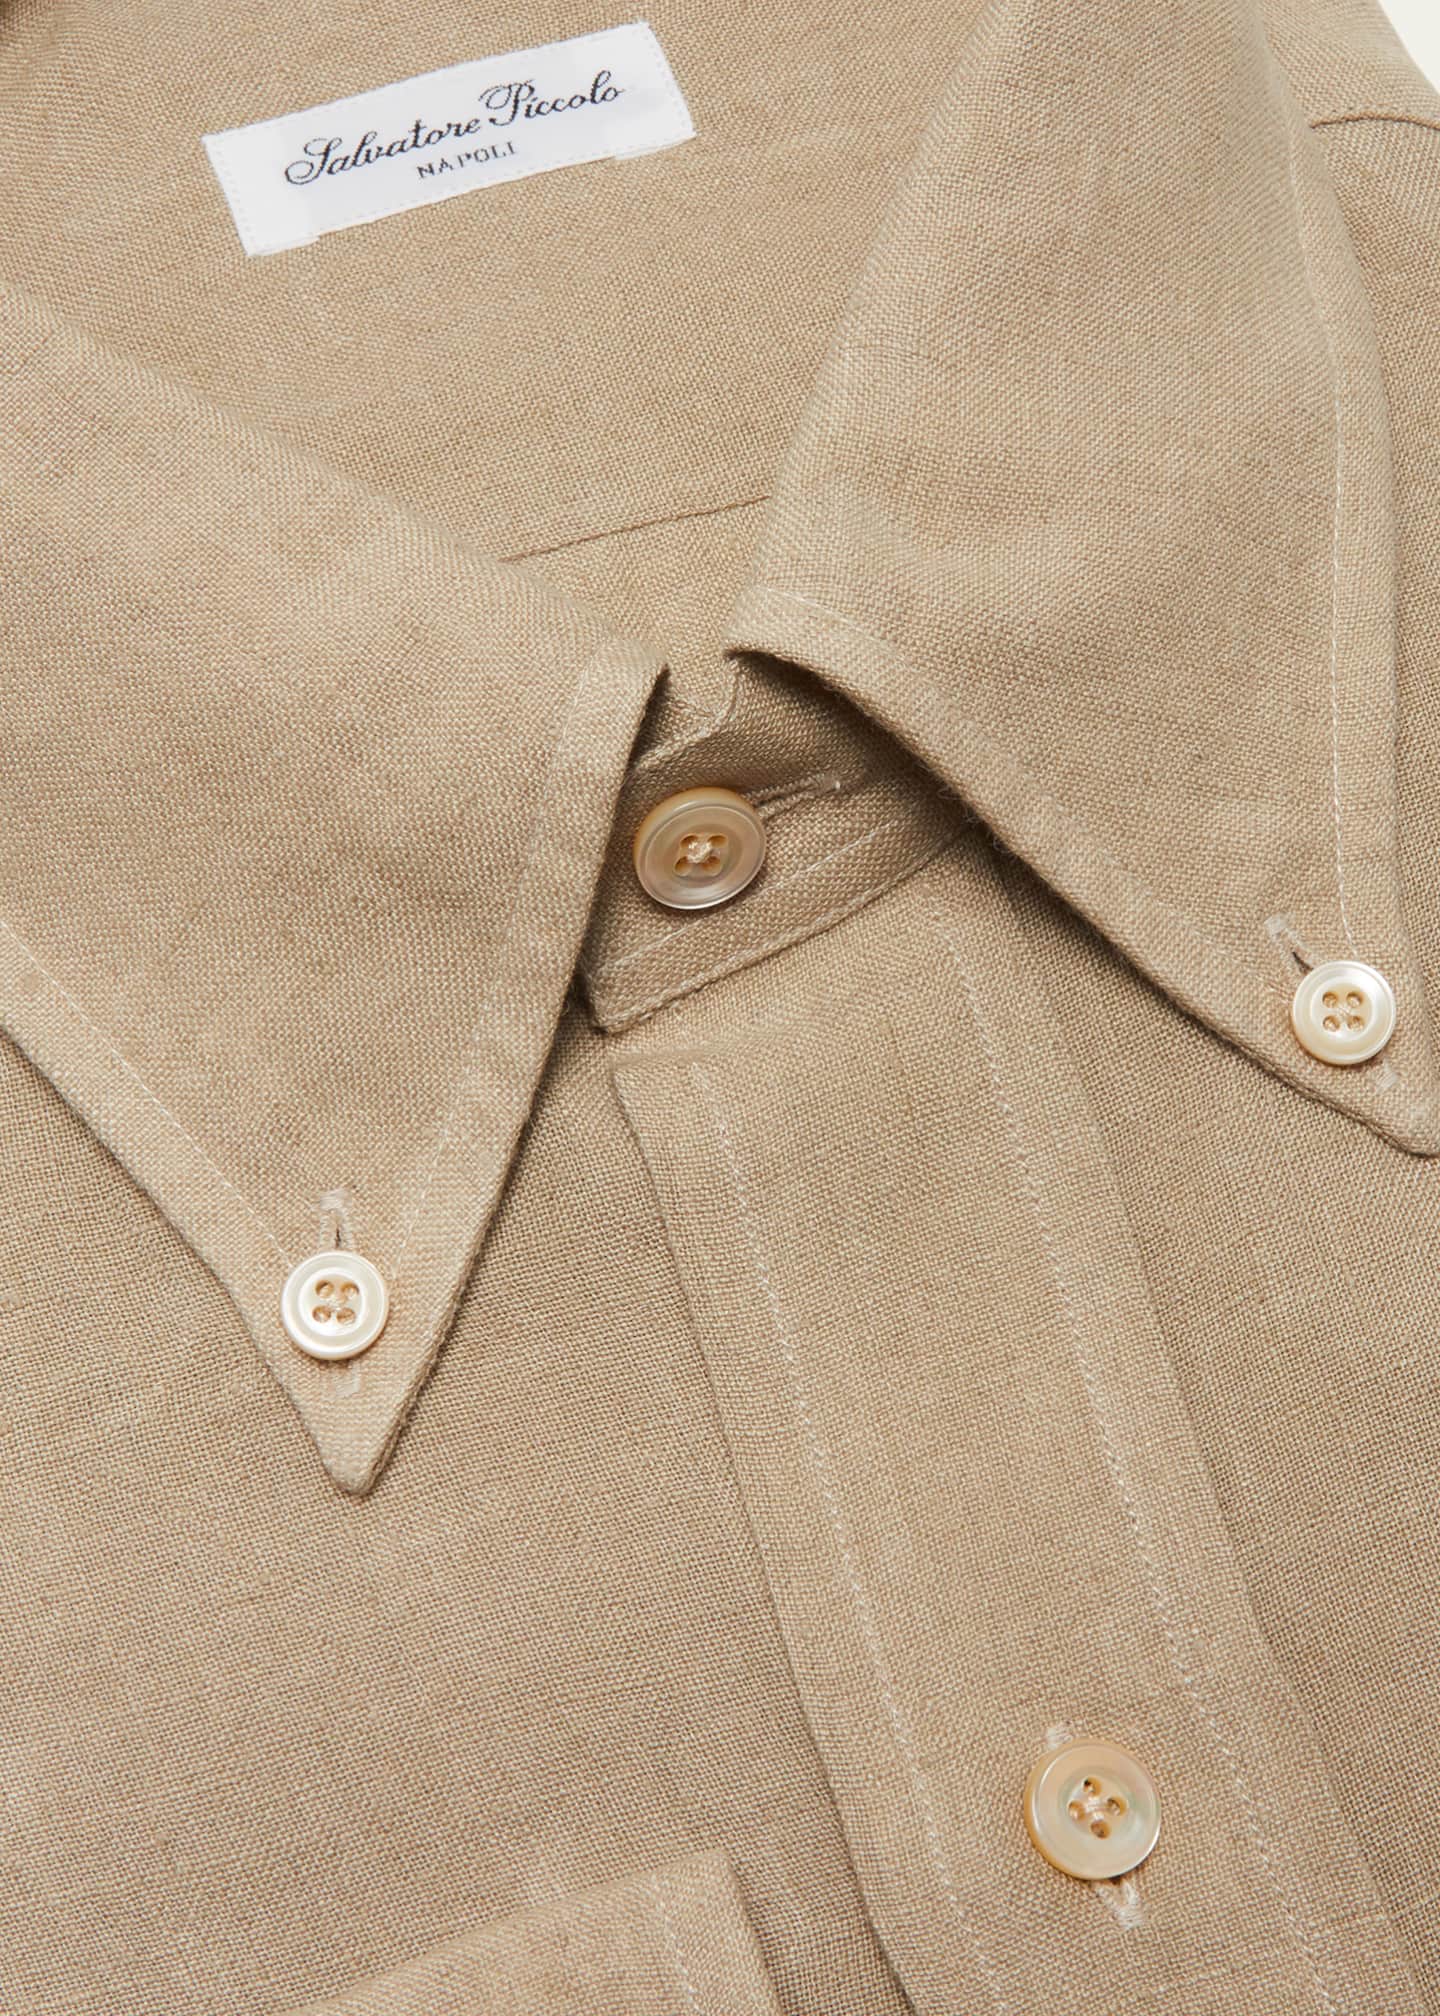 Salvatore Piccolo Men's Button-Down Collar Linen Dress Shirt 